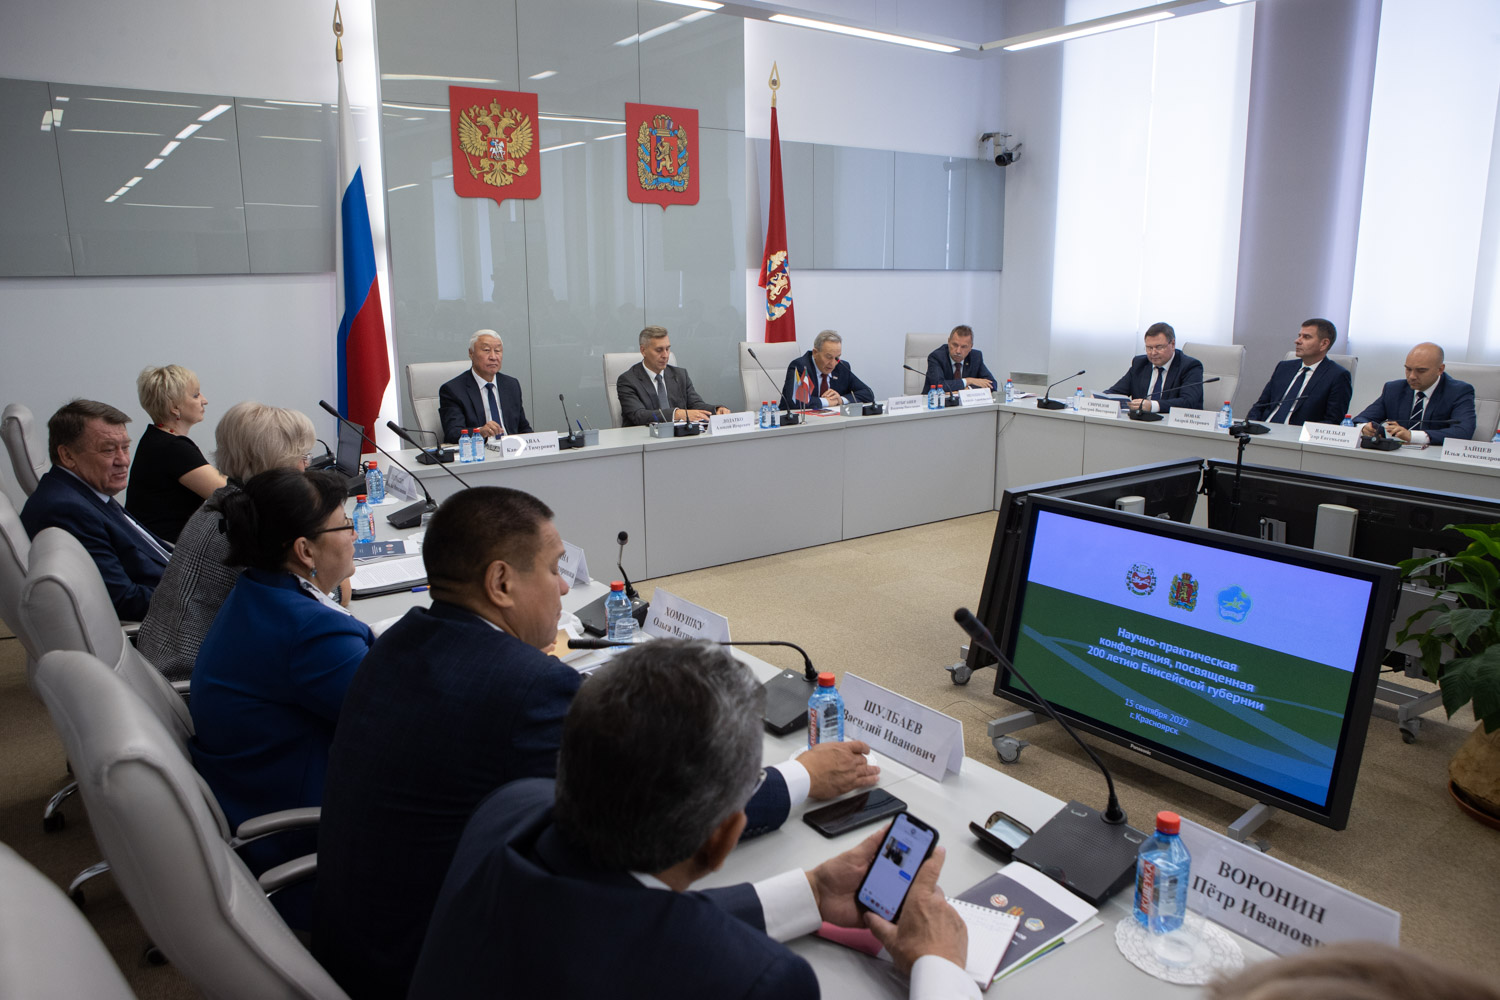 Организацию местного самоуправления в Енисейской Сибири обсудили в Красноярске